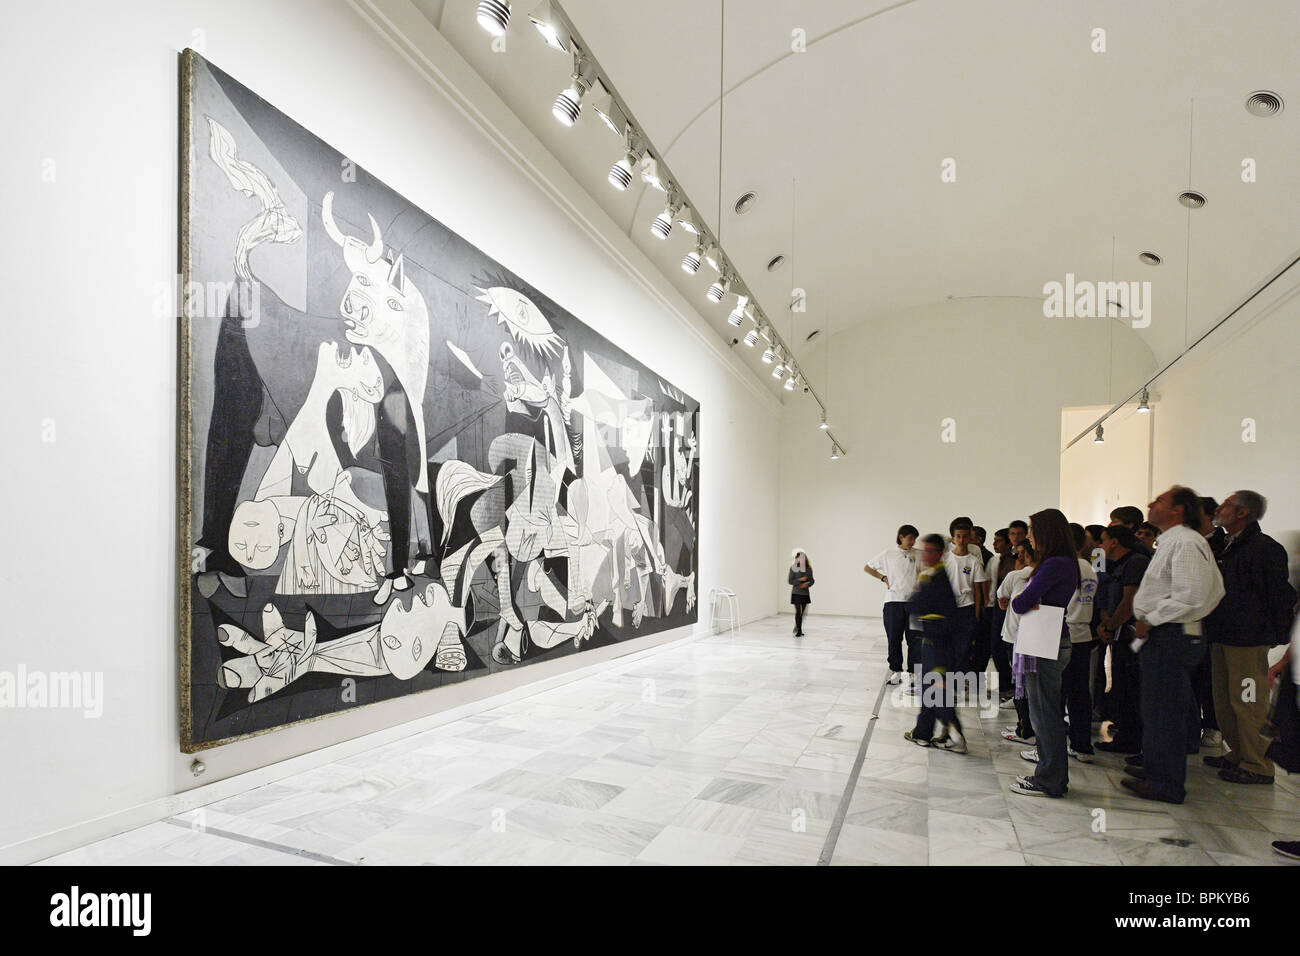 Guernica by Pablo Picasso, Museo Nacional Centro de Arte Reina Sofia (Queen Sofia Museum), Madrid, Spain Stock Photo